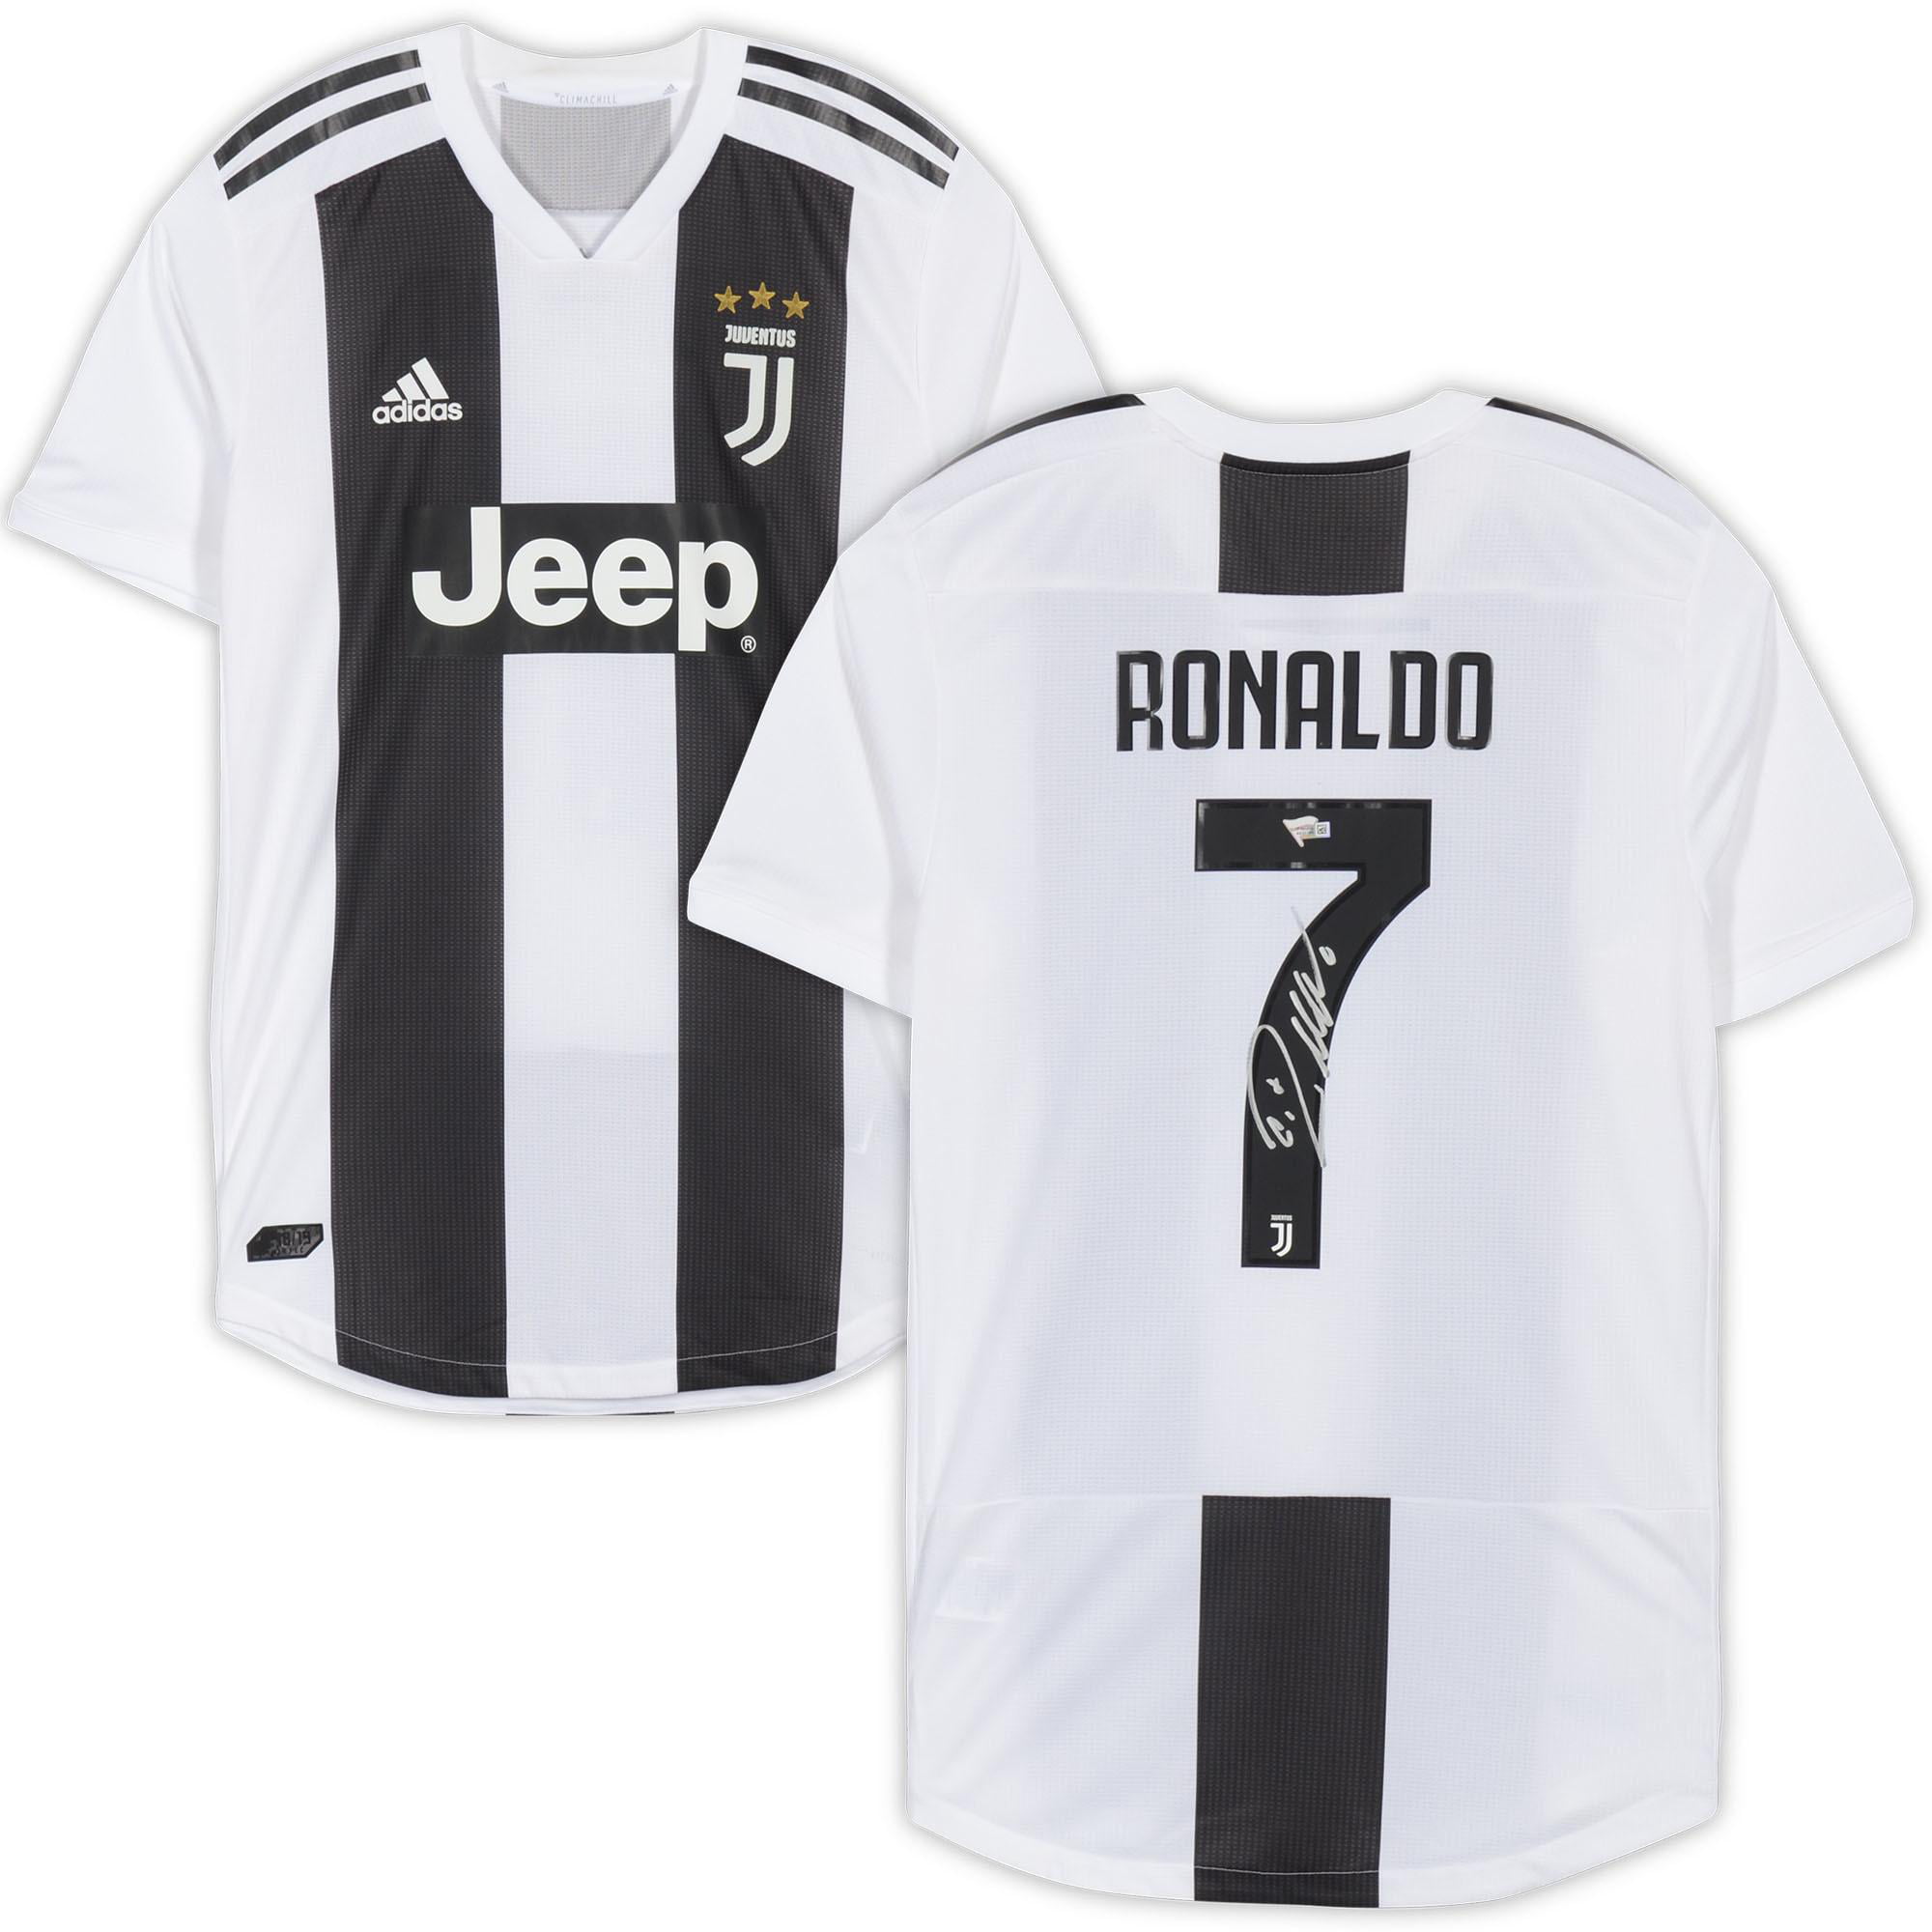 Cristiano Ronaldo Juventus Jersey / 2019/20 adidas Cristiano Ronaldo ...